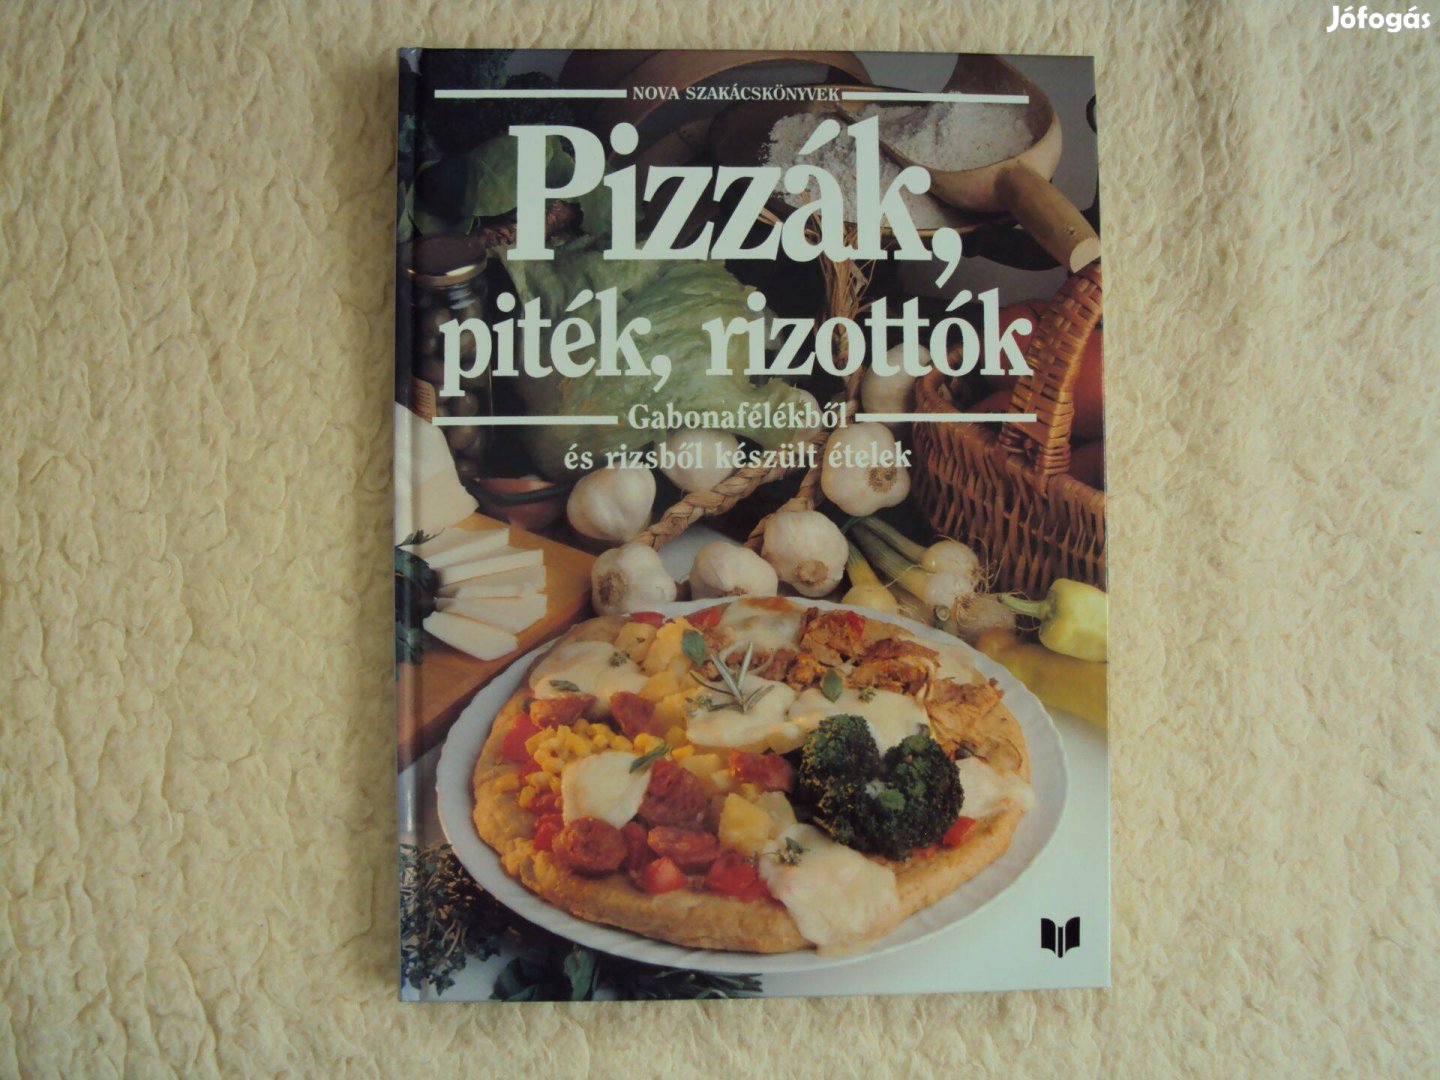 Nova szakácskönyvek - Pizzák, piték, rizottók